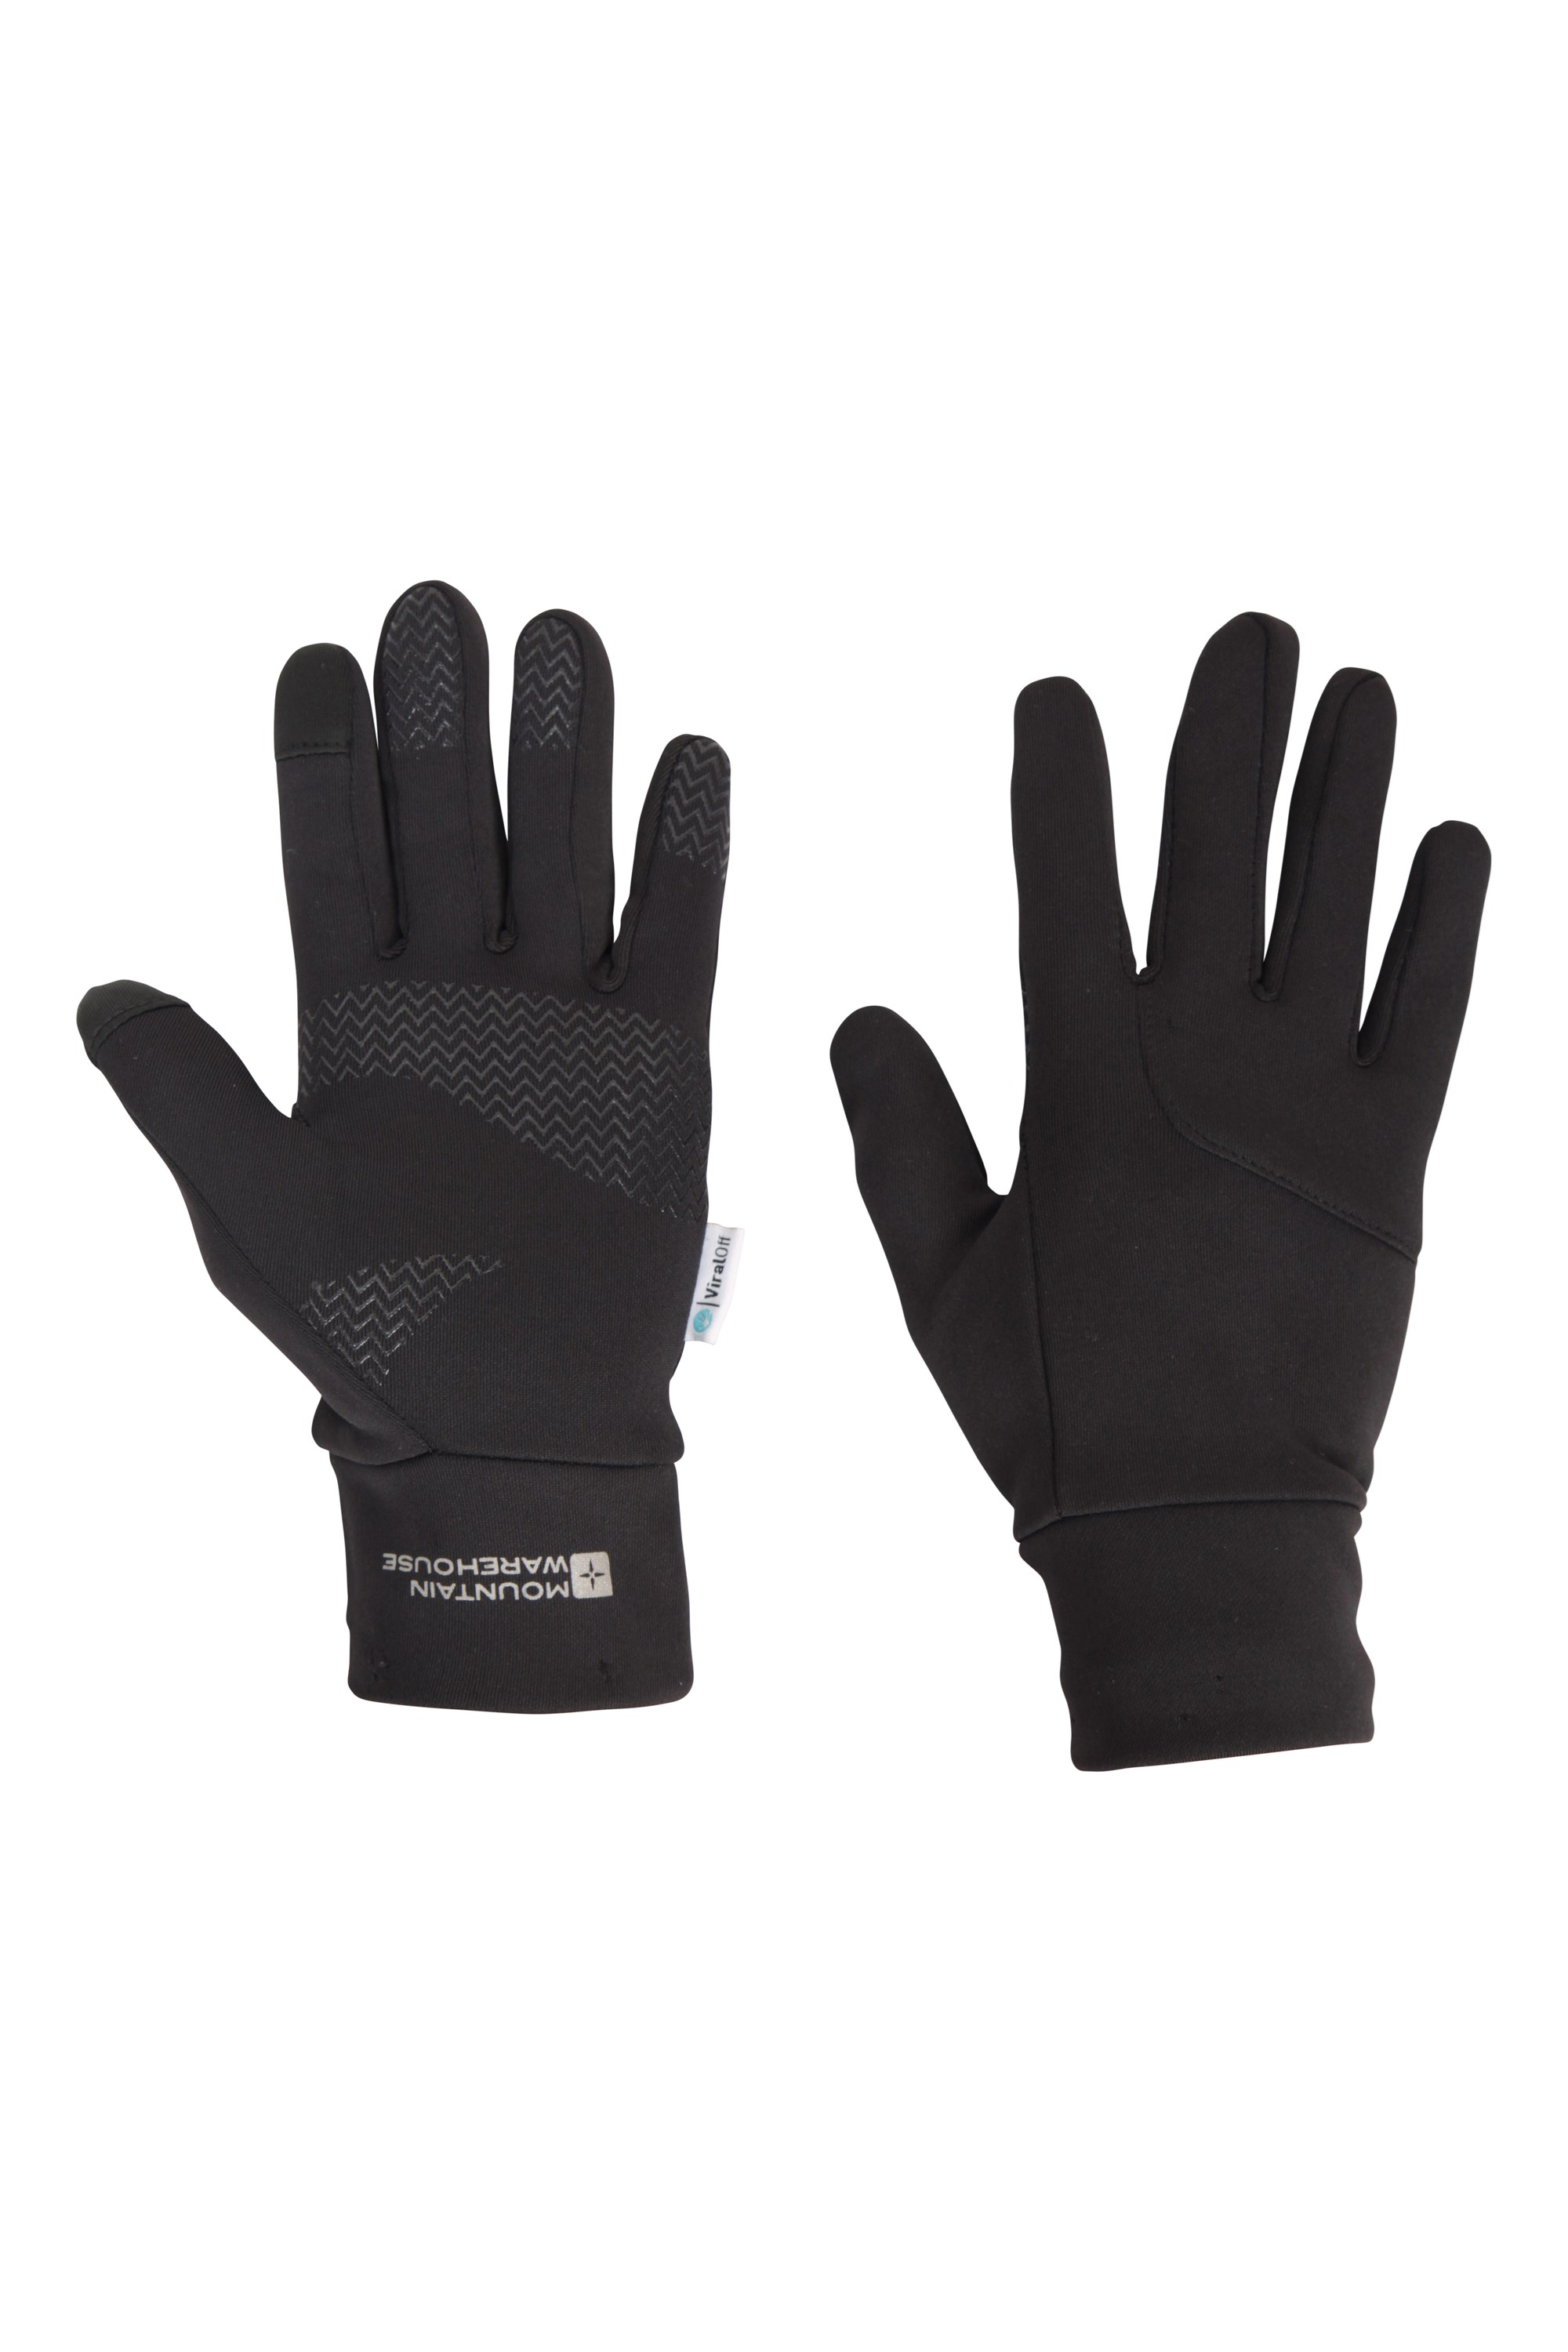 Vertex damskie rękawice z obsługą ekranów dotykowych - Black